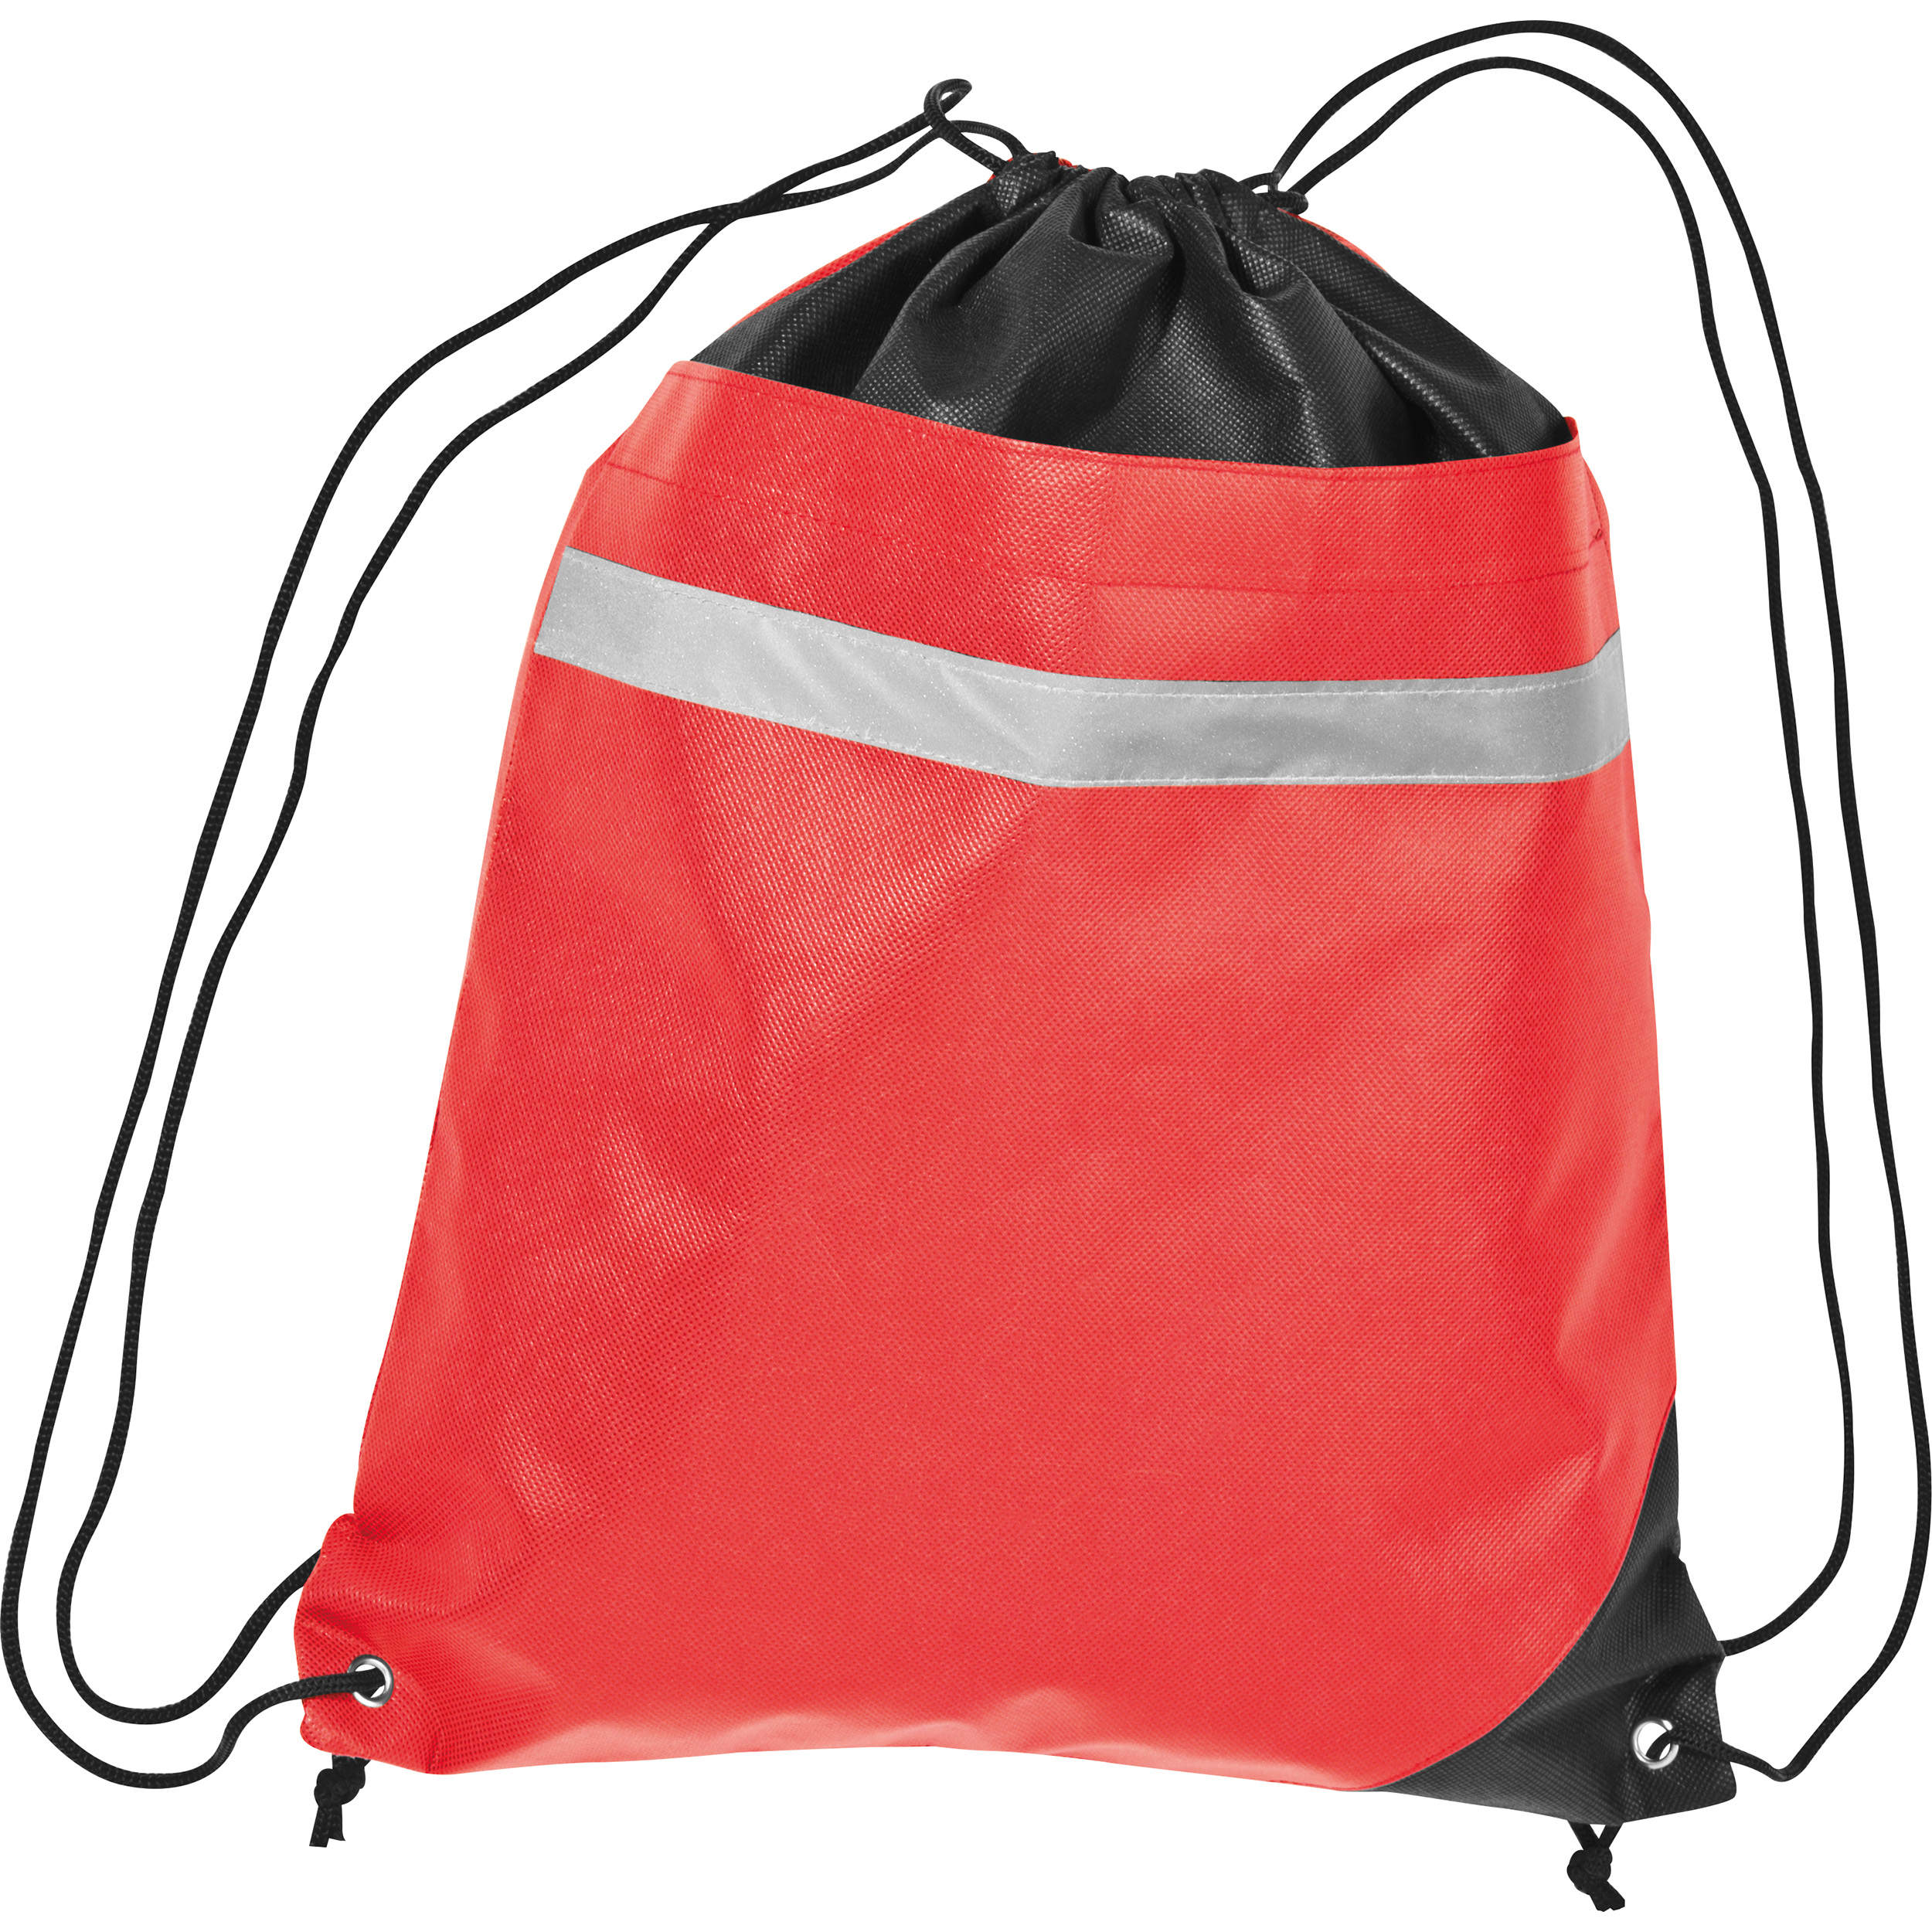 Non-woven gym bag including reflectable stripe